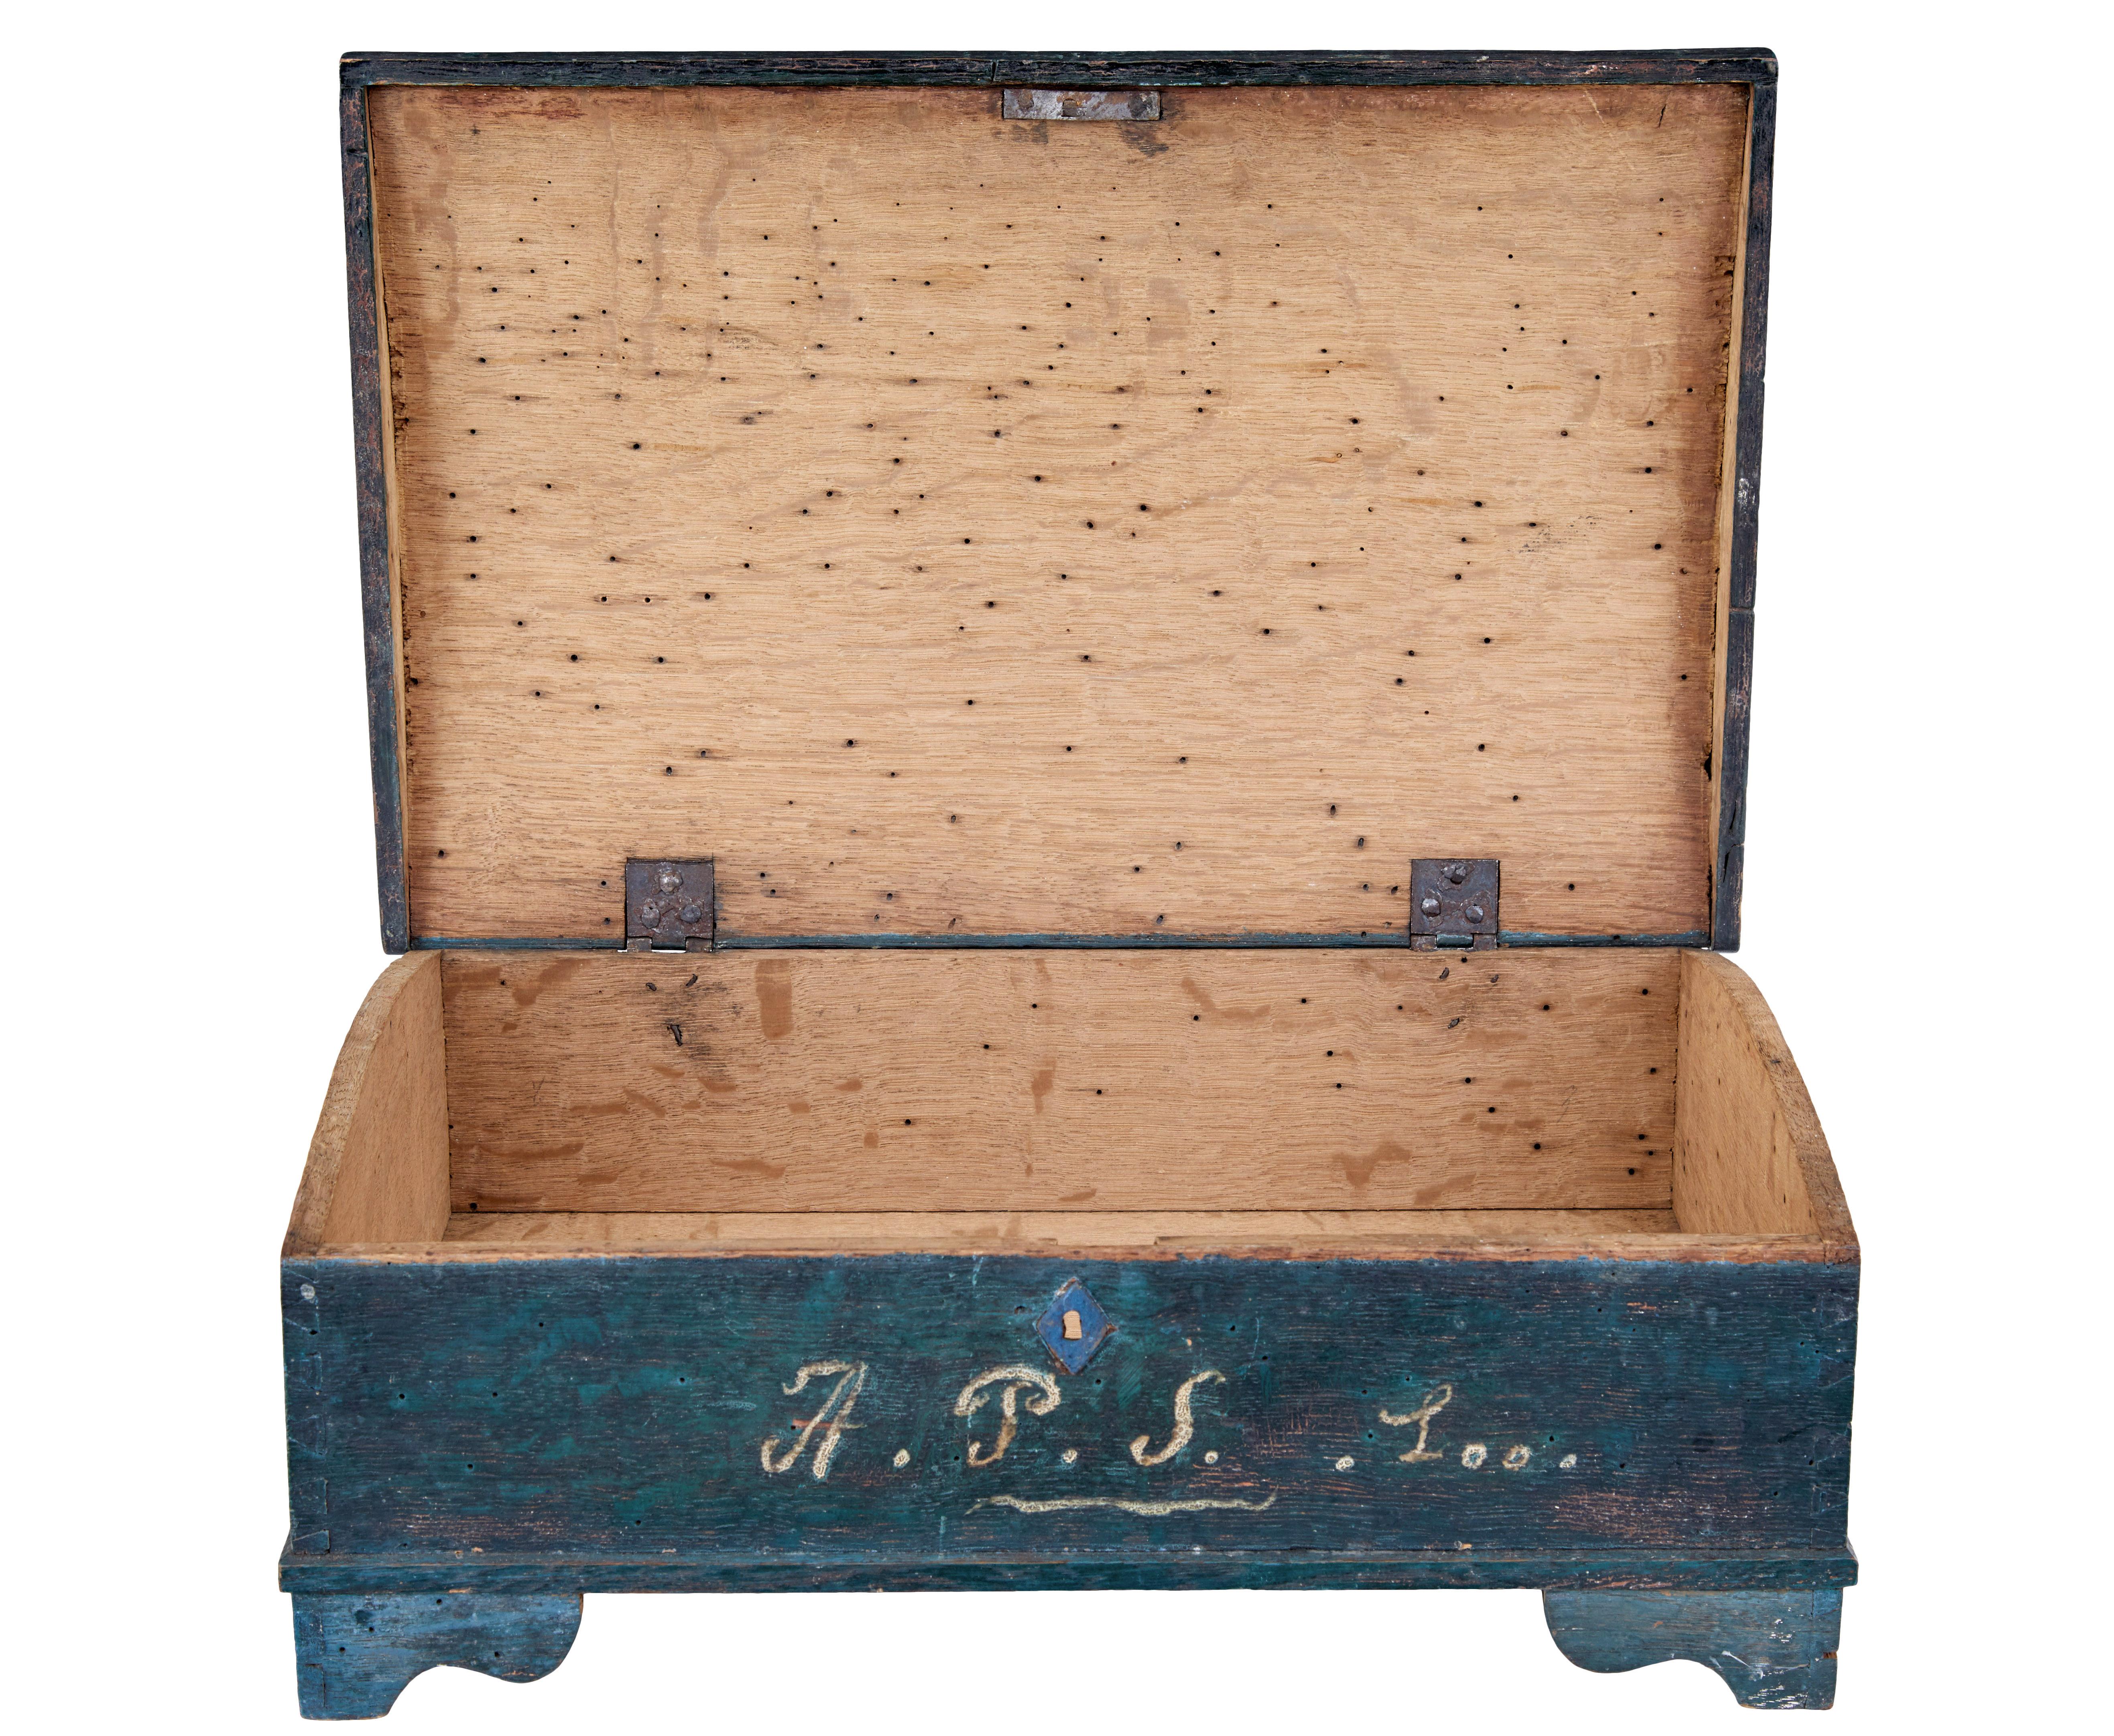 Boîte de bureau suédoise peinte du XIXe siècle, vers 1840.

Boîte scandinave de bonne qualité en peinture d'origine.  Peint à la main dans une palette de couleurs bleu/vert.  Le couvercle est orné d'un cartouche rouge et les initiales a.P.S. sont